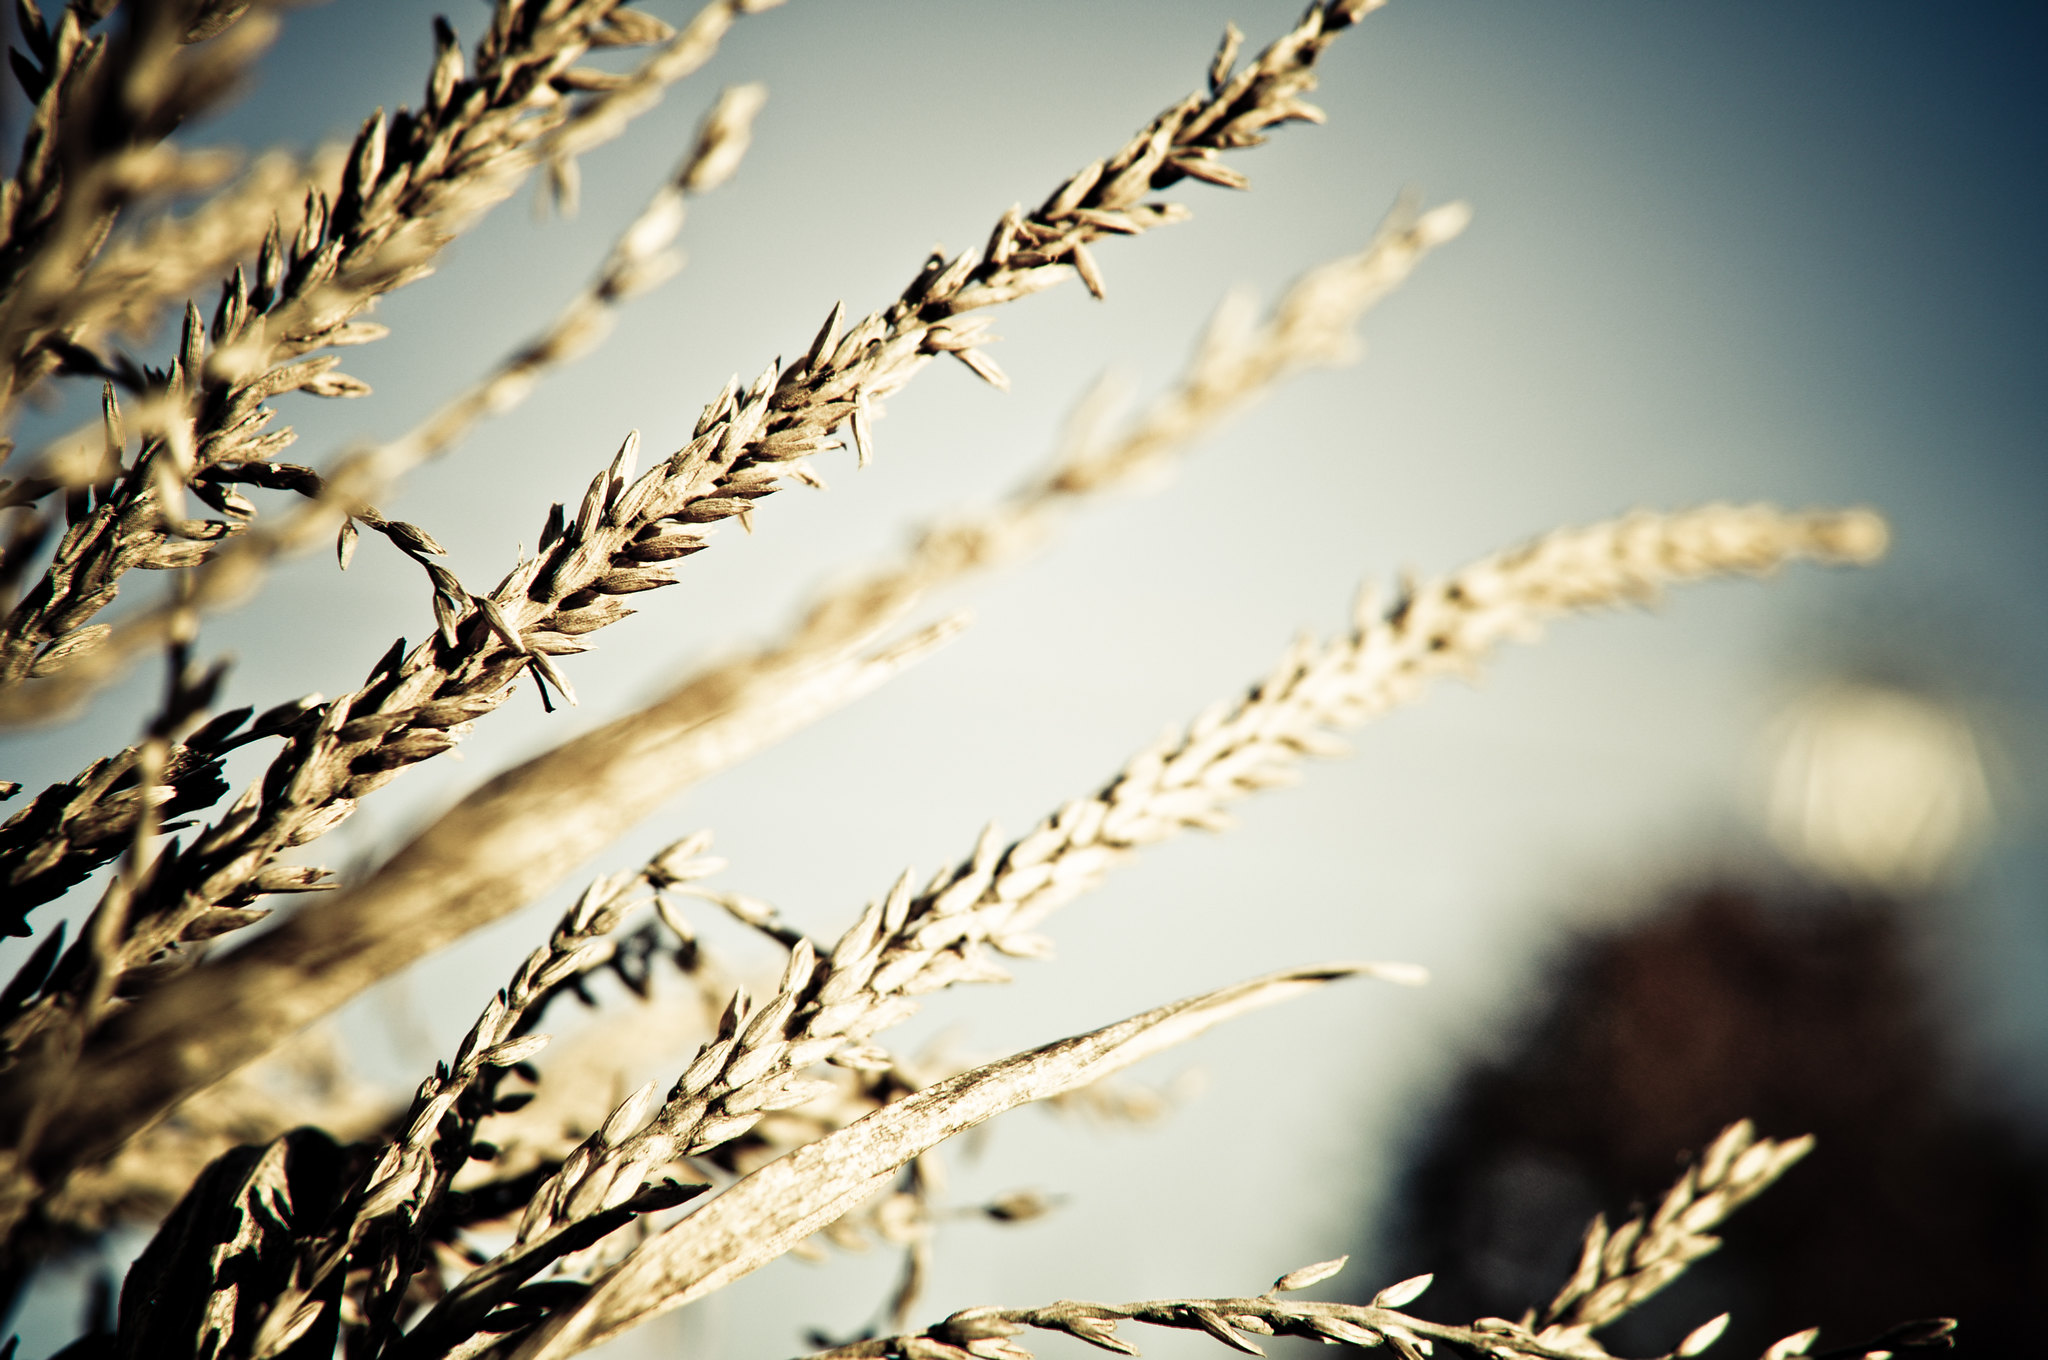 Il existe une immense variété de céréales dans le monde, mais seules quelques-unes sont cultivées à grande échelle. © Seoulful Adventures, Flickr